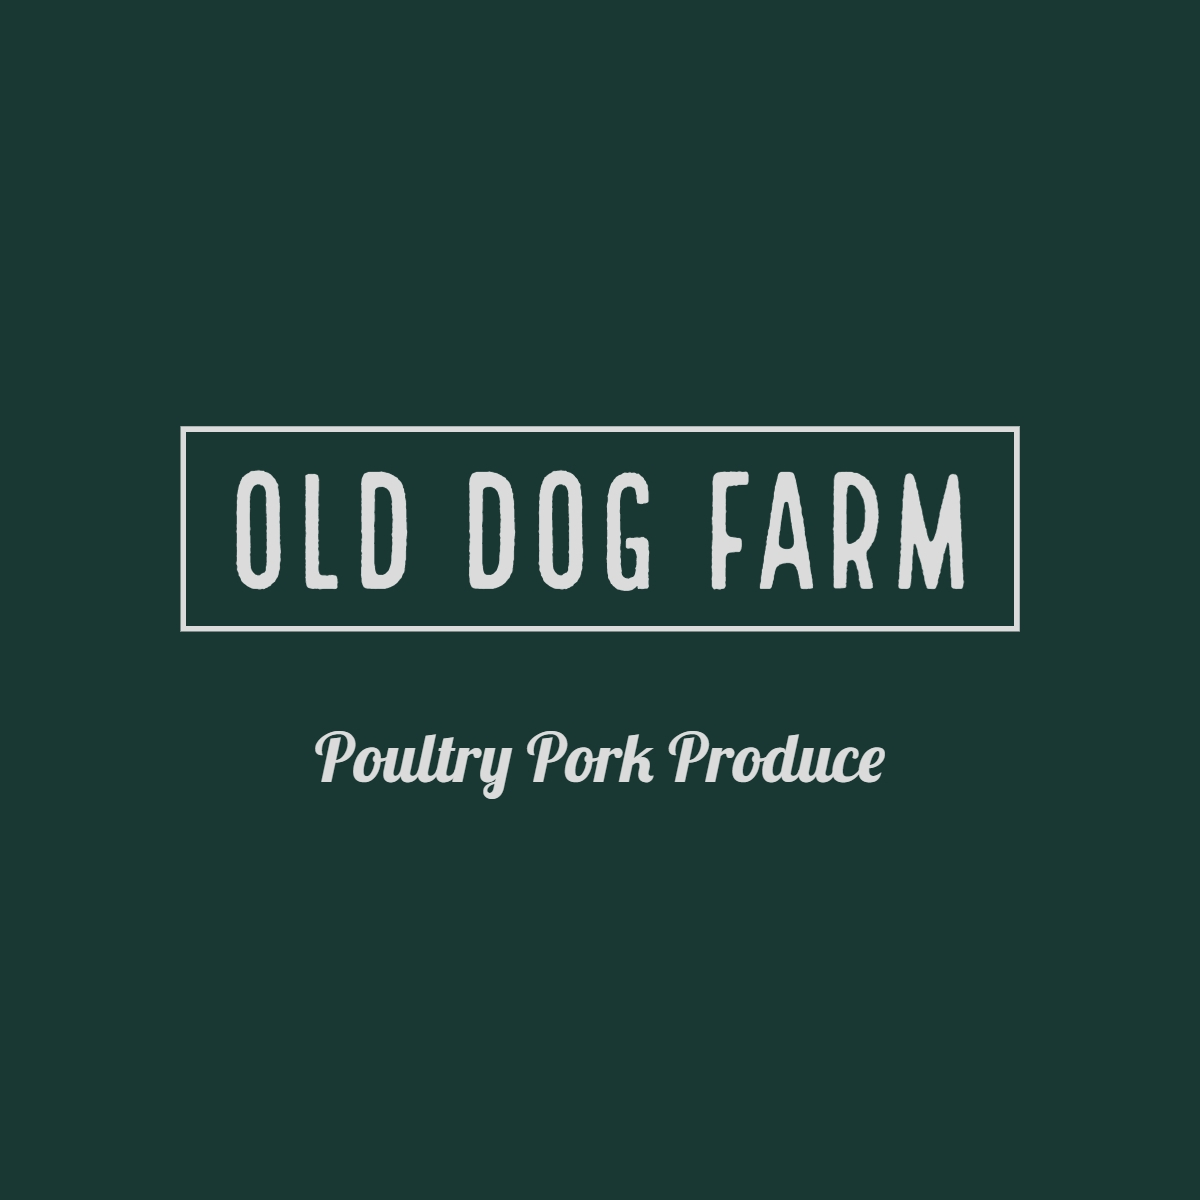 Old Dog Farm, LLC